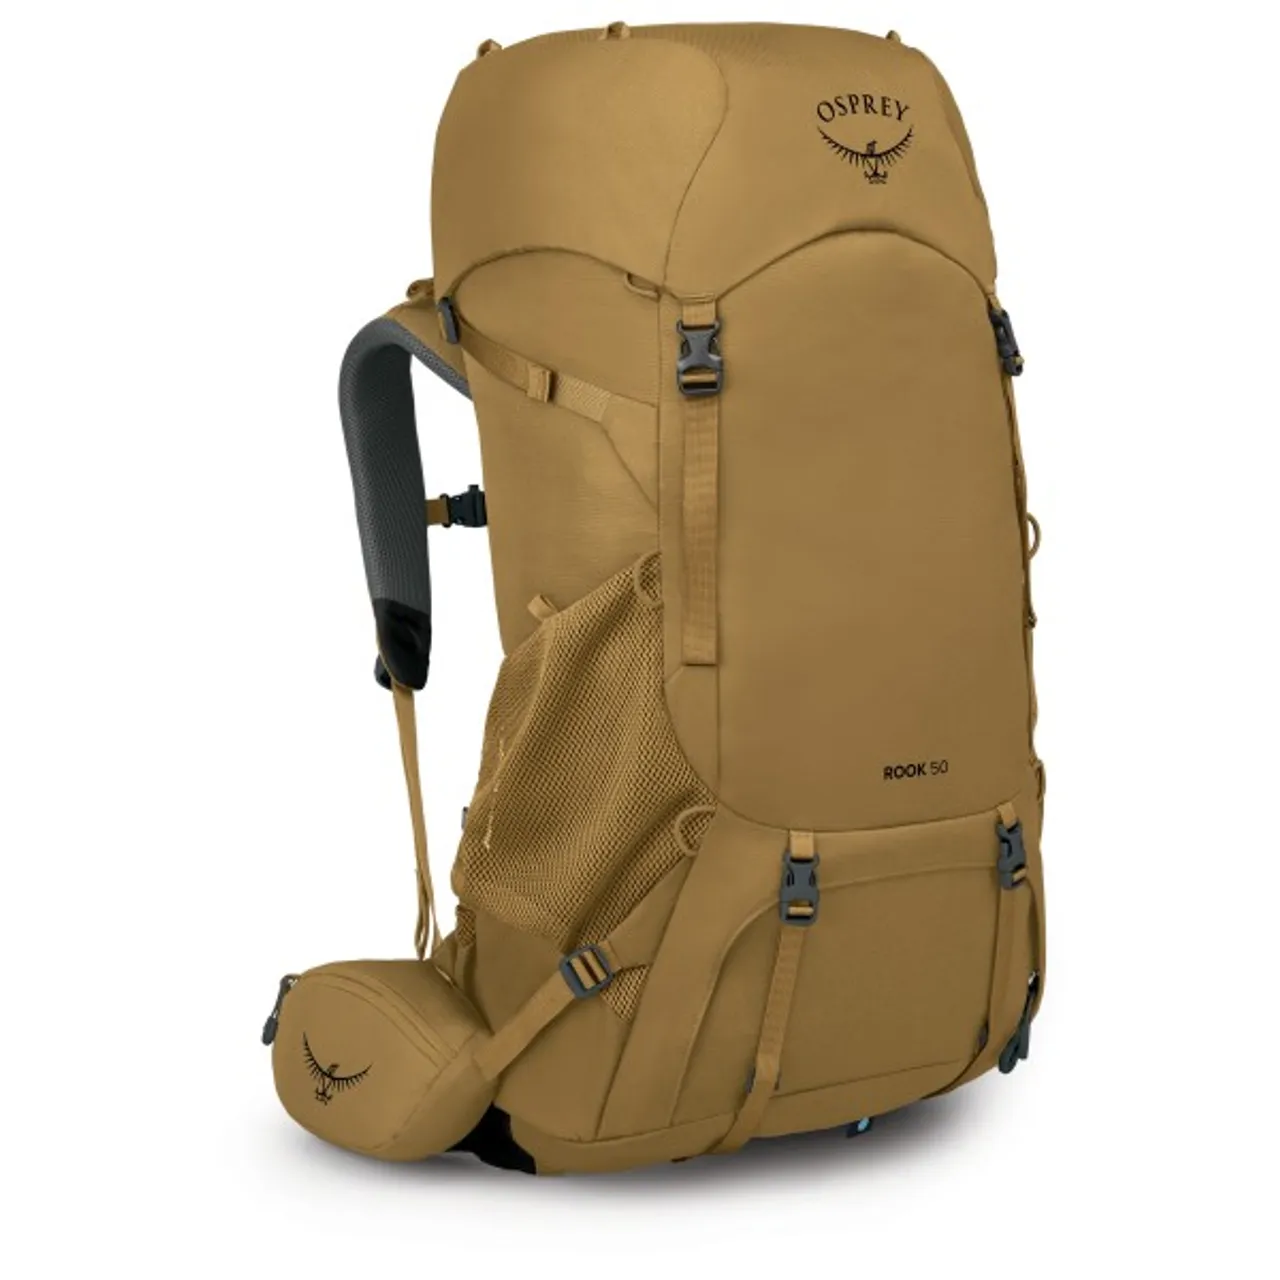 Osprey - Rook 50 - Walking backpack size 50 l, brown